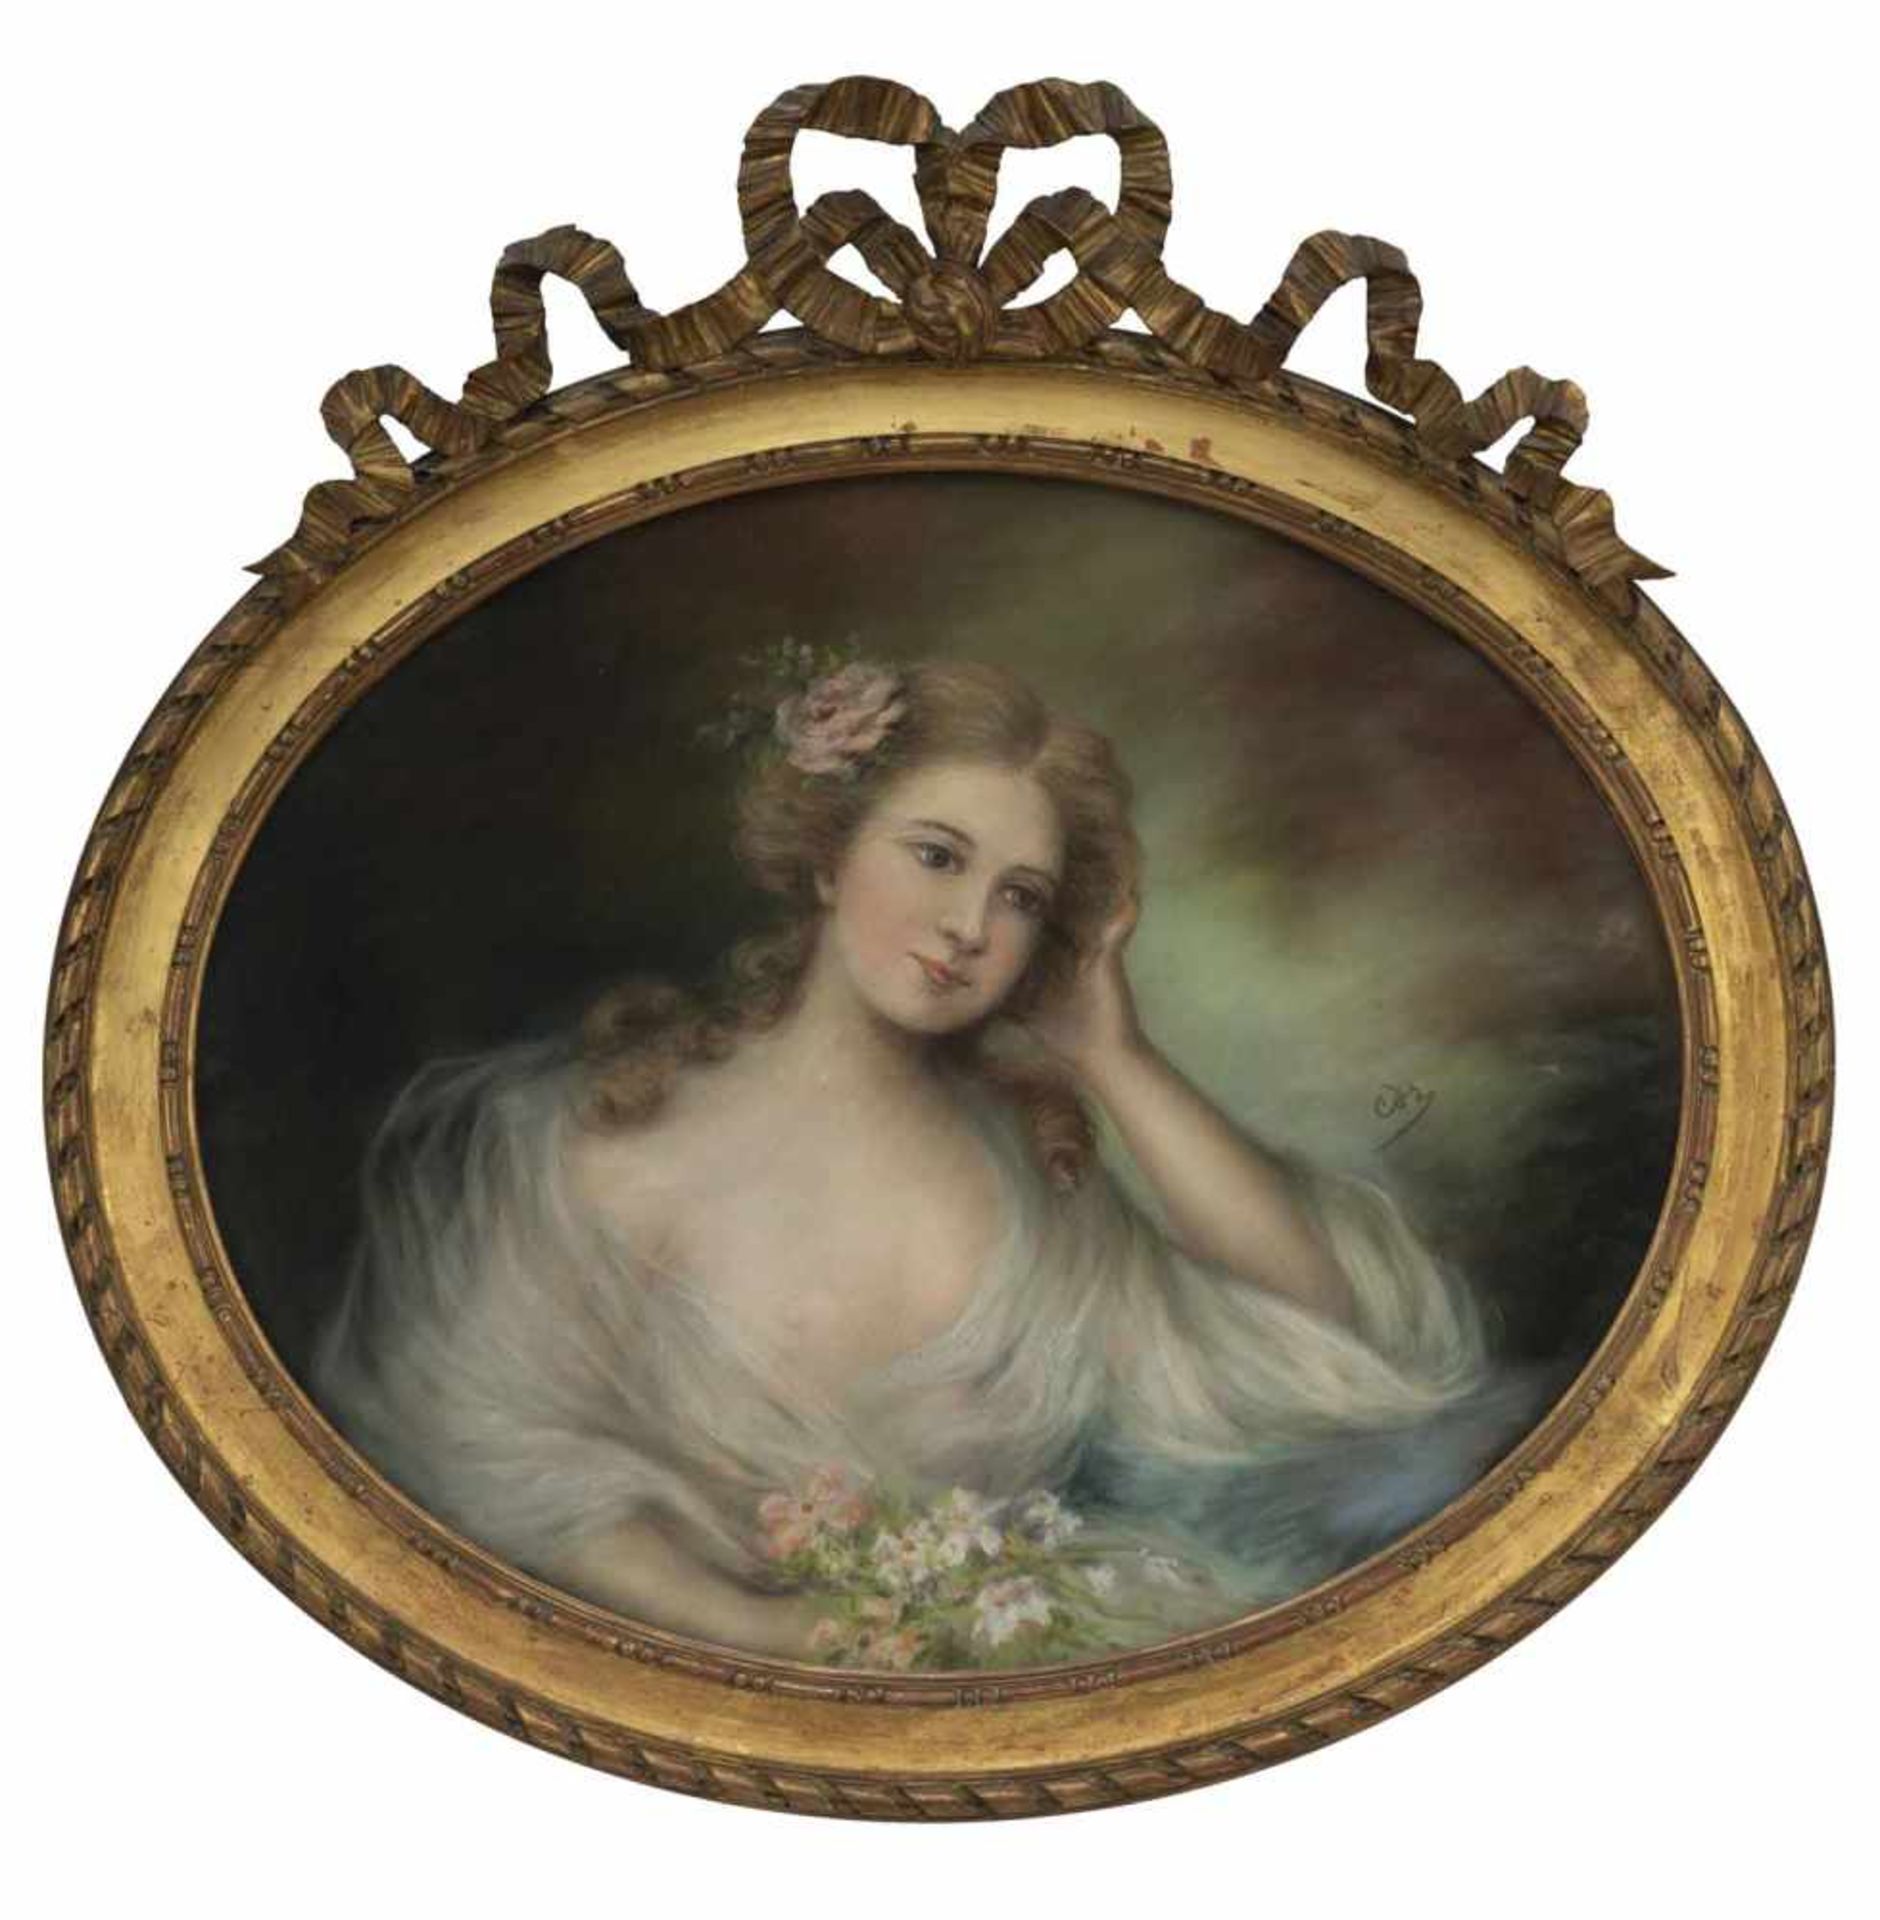 Portraitist2. Hälfte 19. Jahrhundert50 x 60 cmBildnis einer Dame in weißem Kleid mit